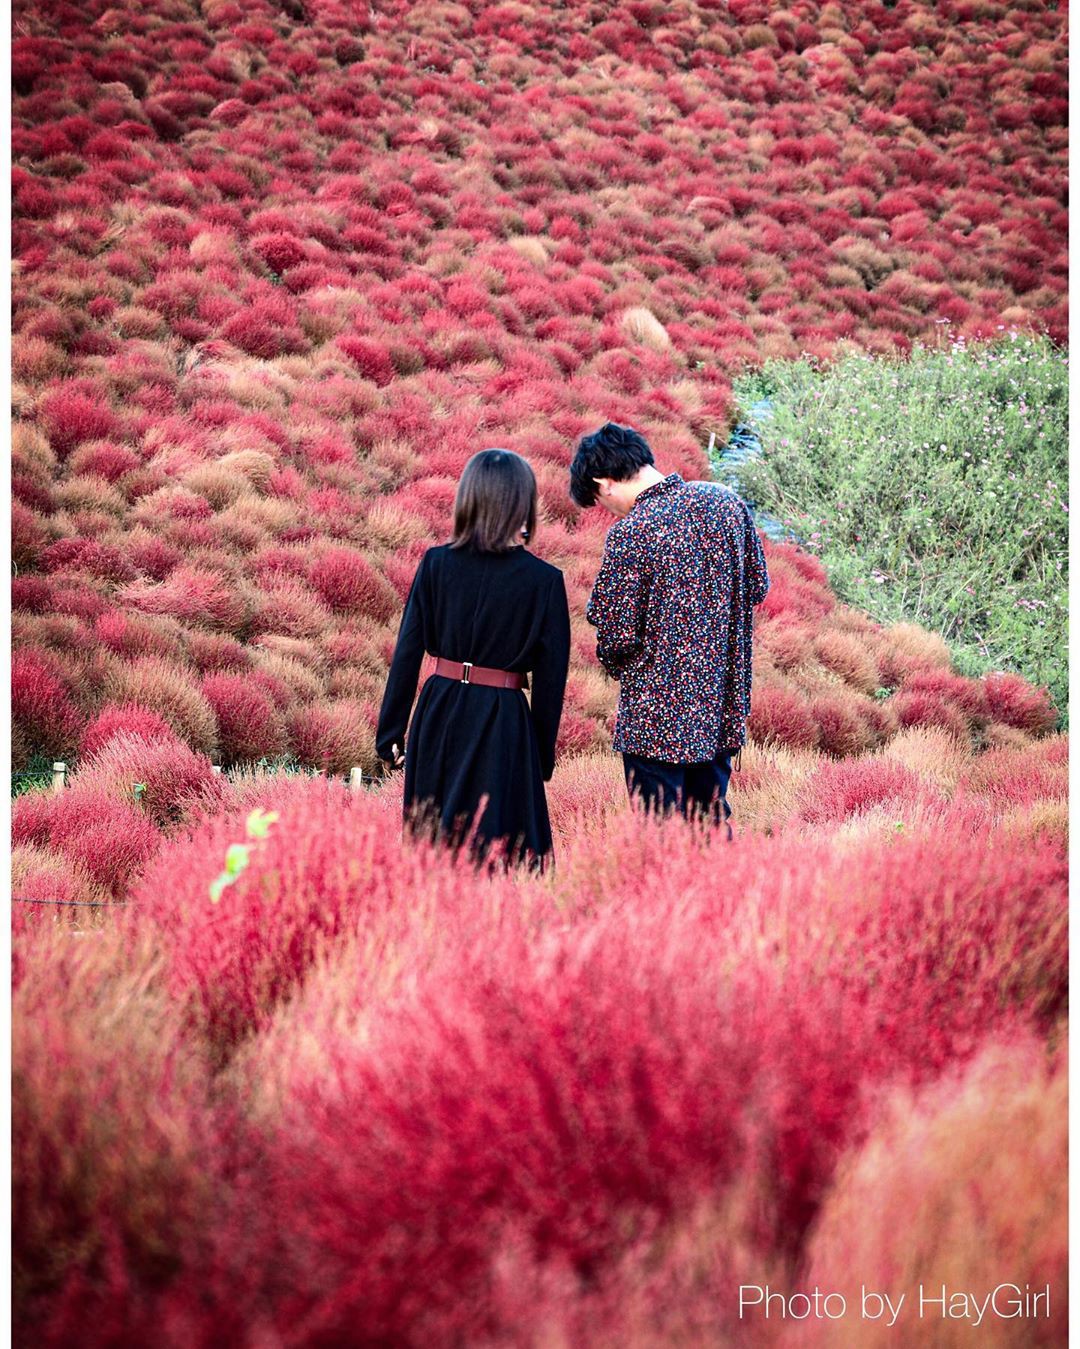 Đẹp nhất Nhật Bản mùa này chính là đồi cỏ Kochia đỏ rực, du khách đua nhau check-in đông không thấy lối đi - Ảnh 8.